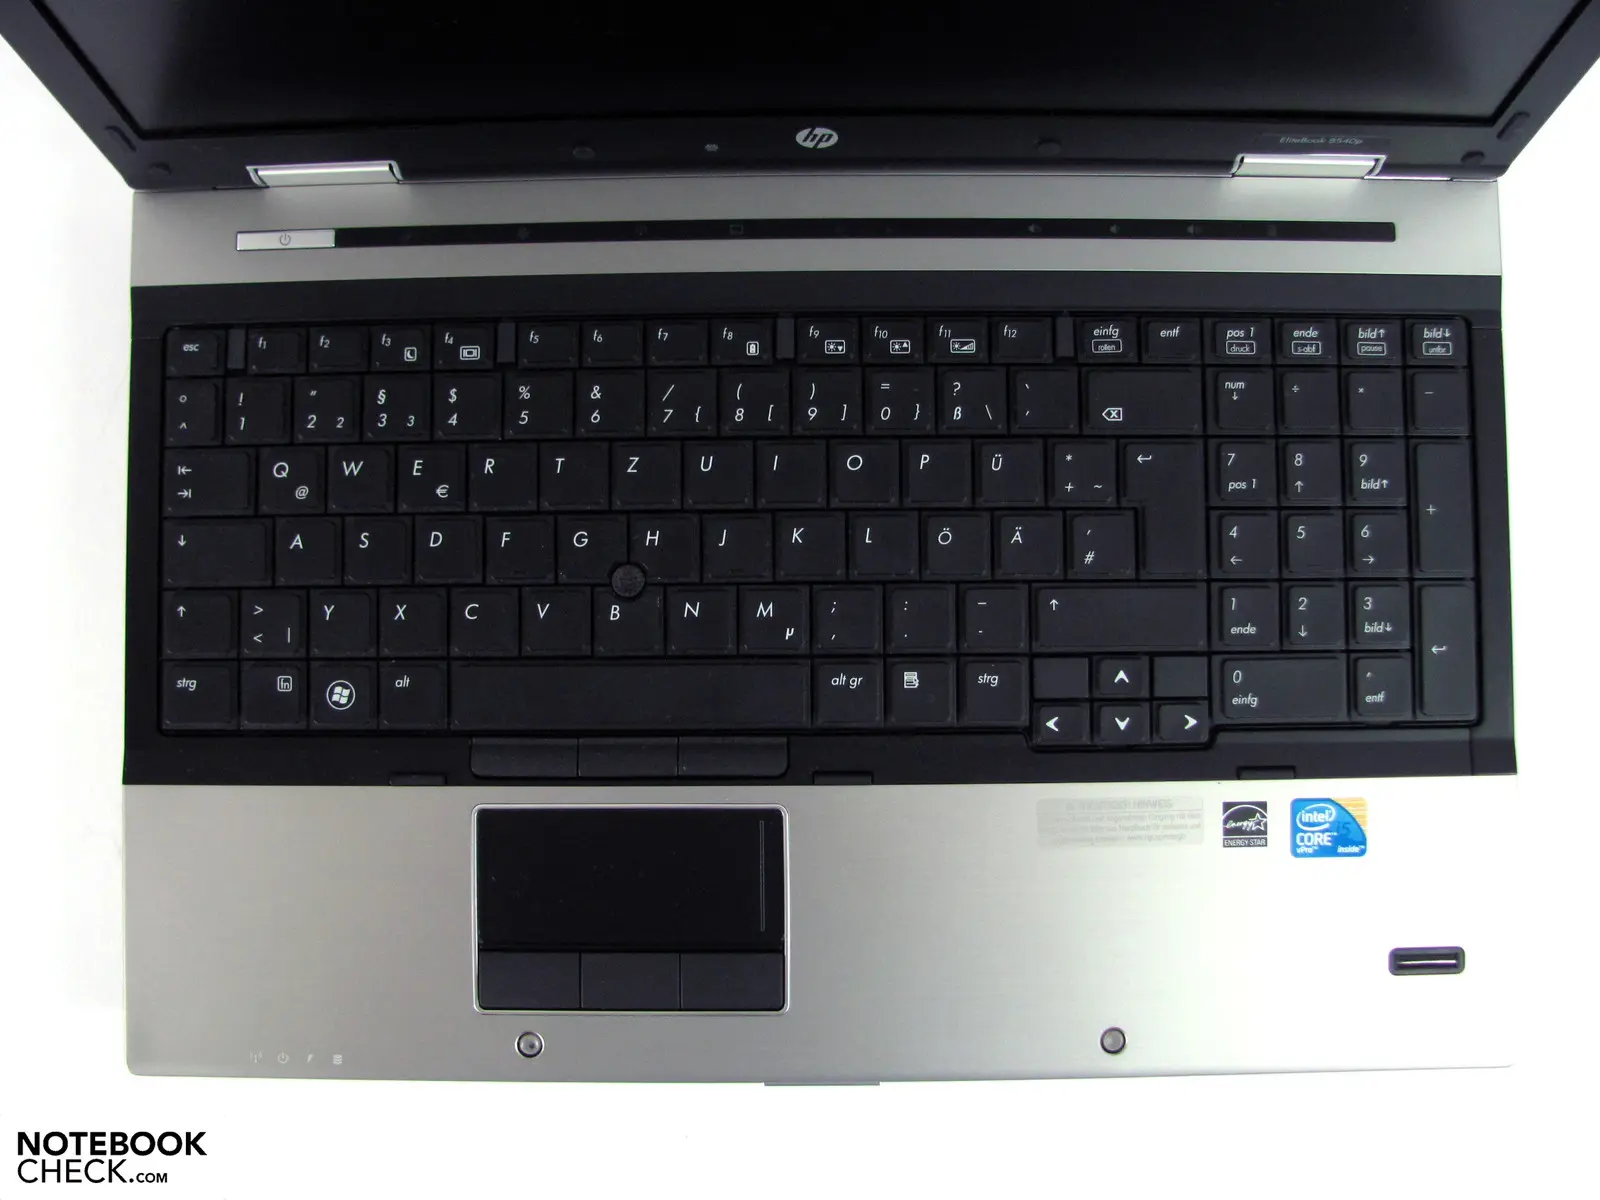 hewlett packard elitebook 8540p - What screen does the HP EliteBook 8540p have